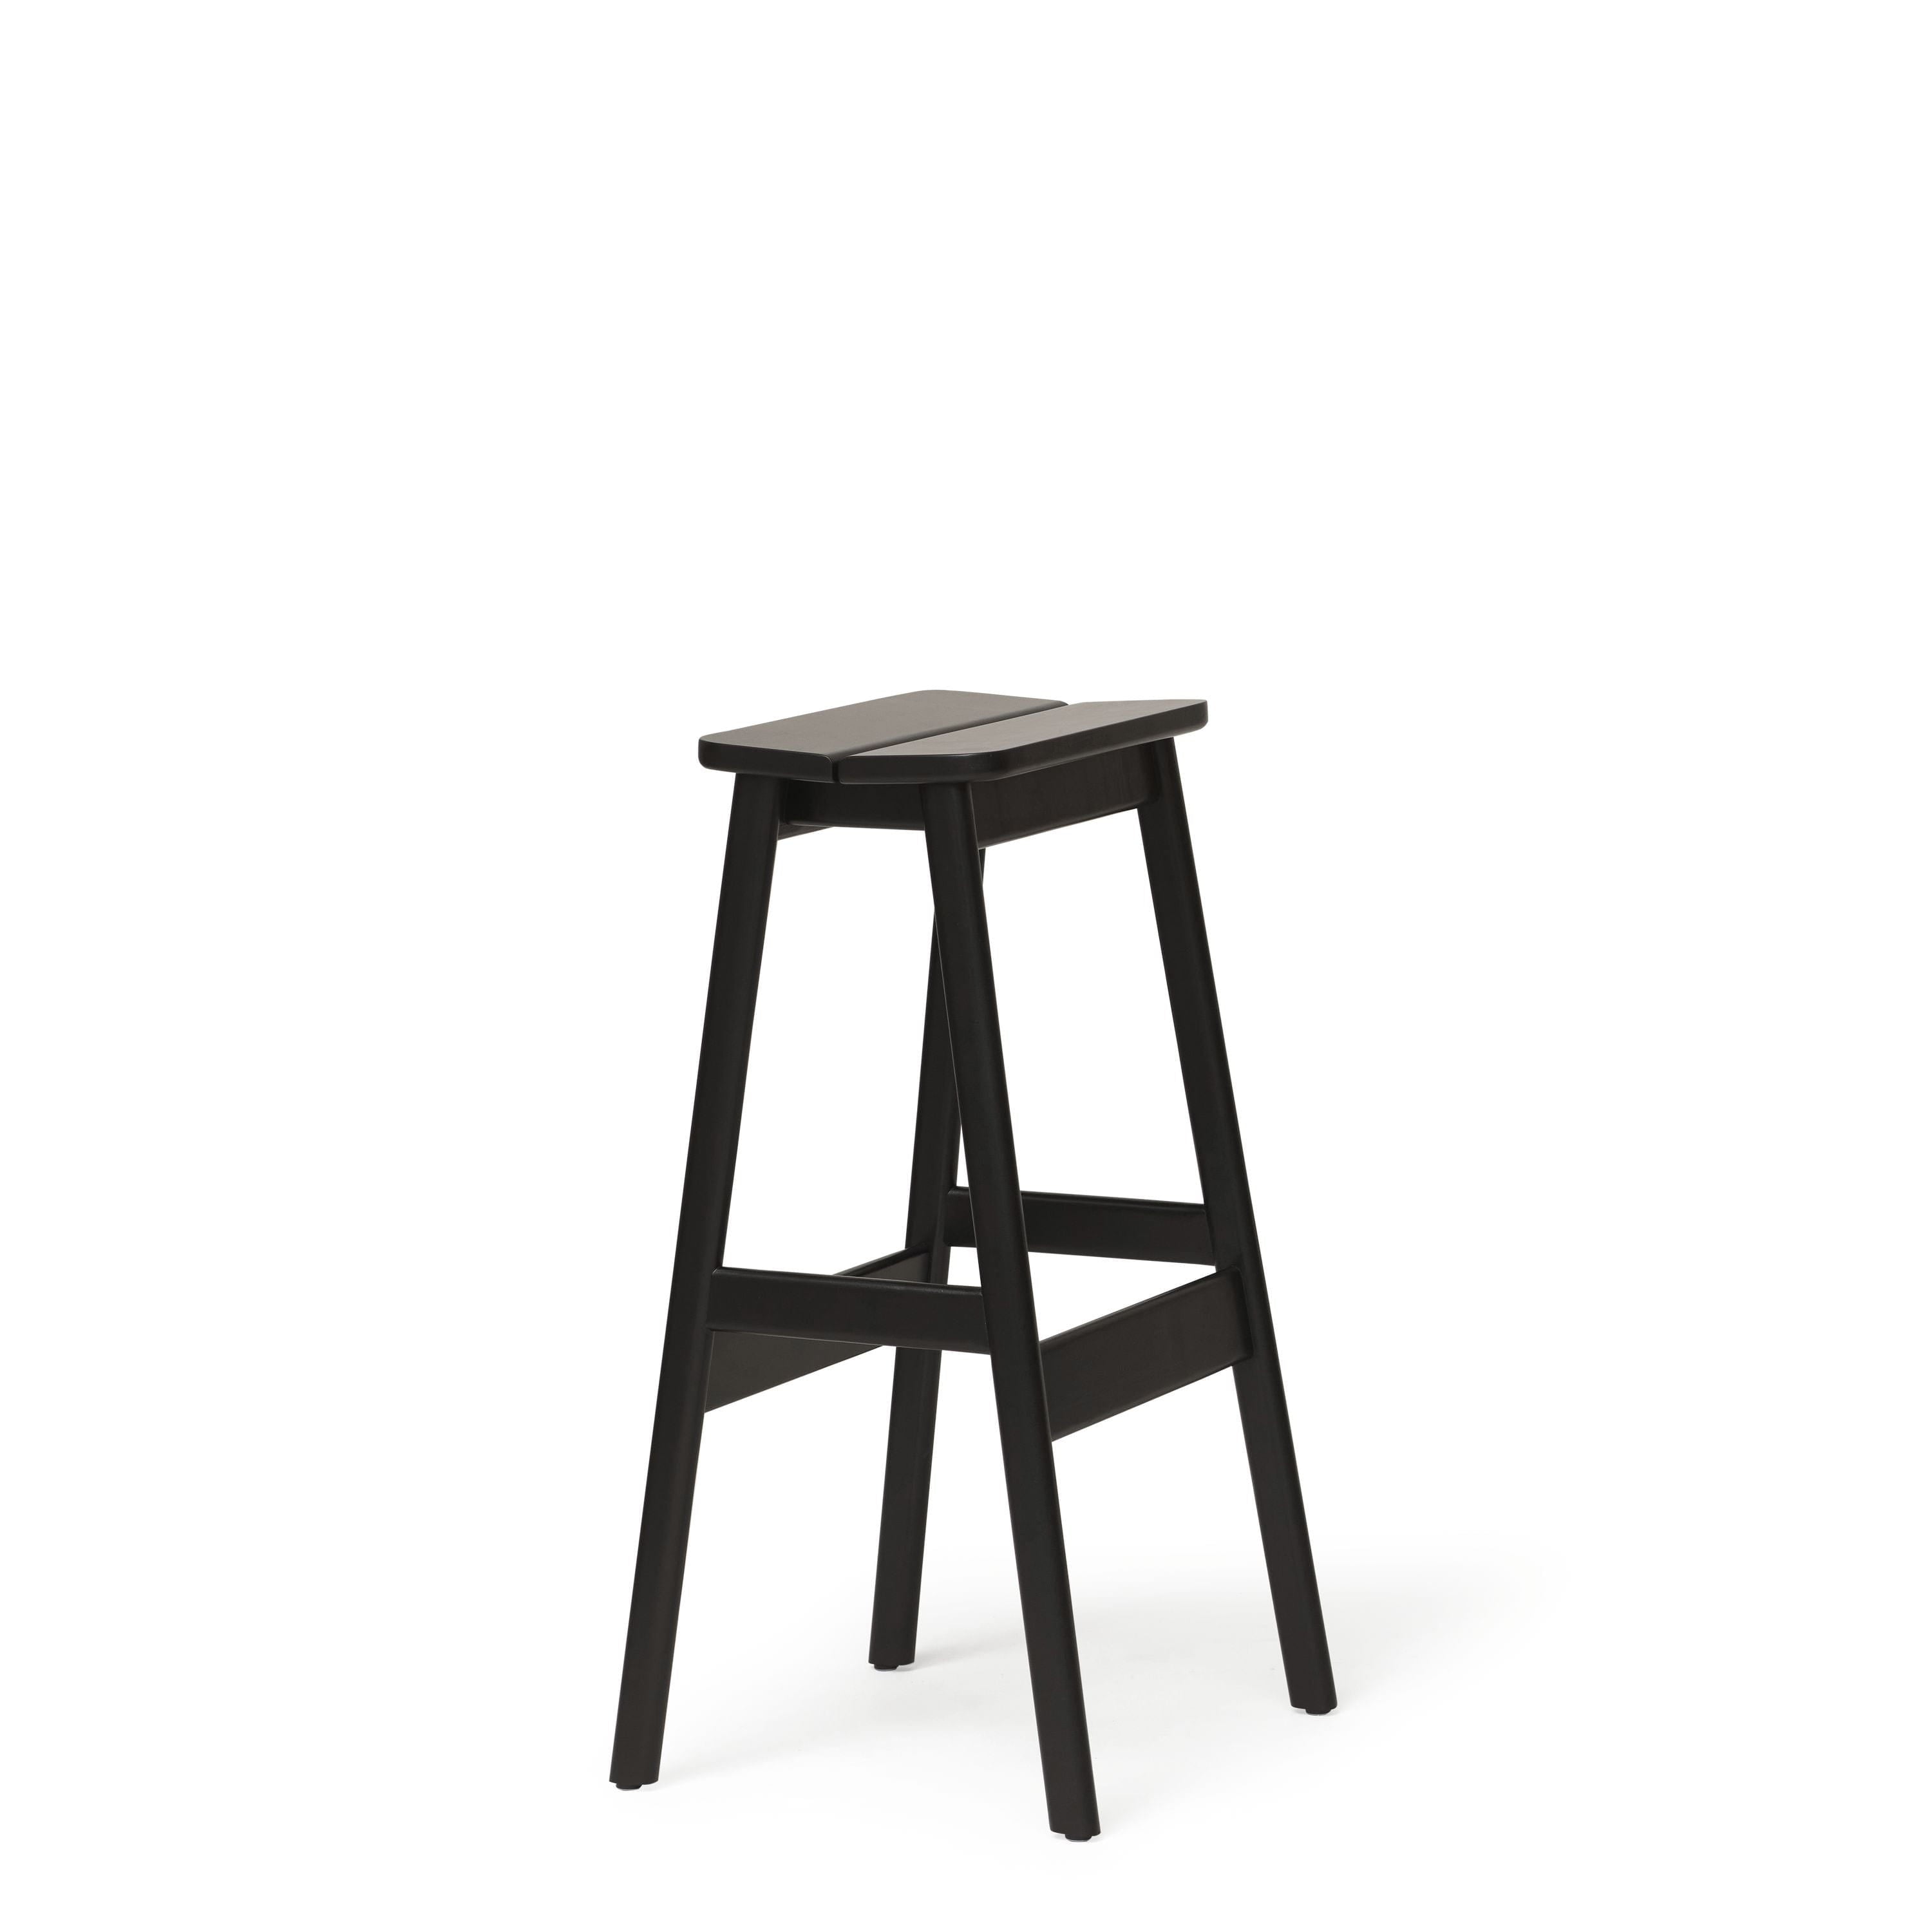 Form & Refine Kąt standardowy stołek barowy 75 cm. Czarny buk